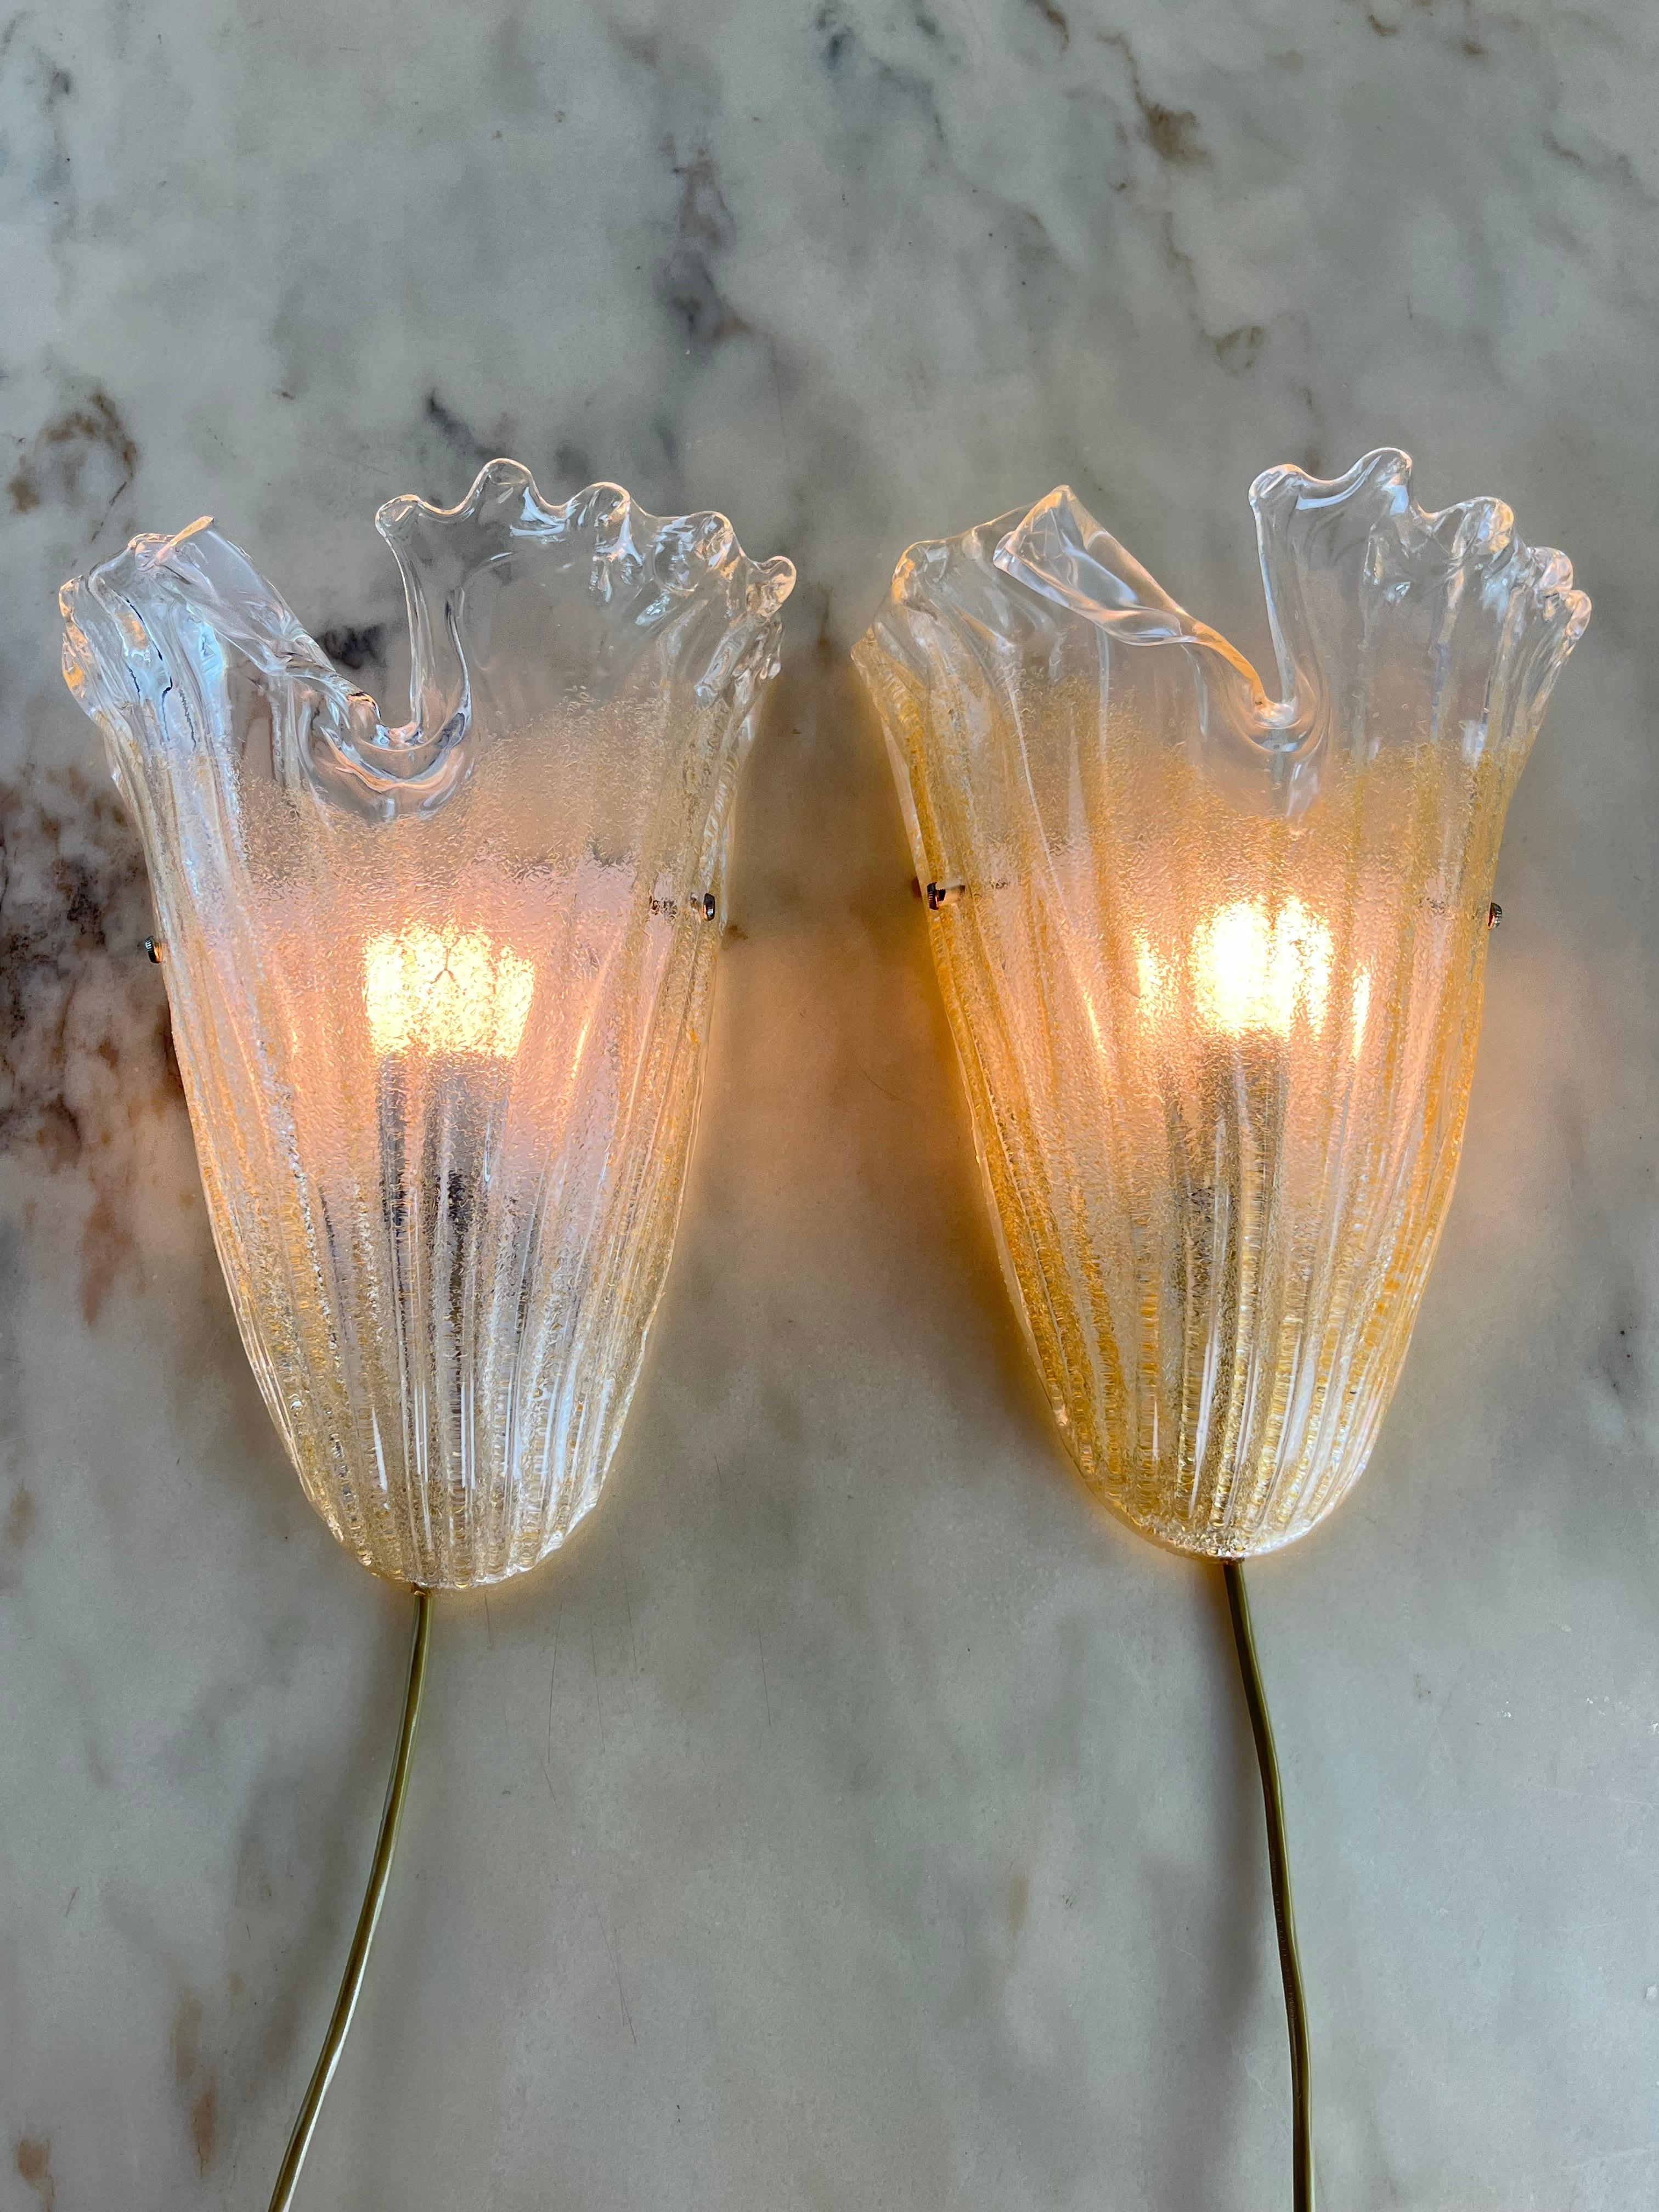 Satz von 2 Wandlampen aus Murano-Glas, Barovier&Toso zugeschrieben, 1980er Jahre
Metallstruktur, E27-Lampen.
Intakt und funktionsfähig. Guter Zustand, geringe Alterungsspuren.
Da sie vollständig von Hand gearbeitet sind, weisen sie eine etwas andere